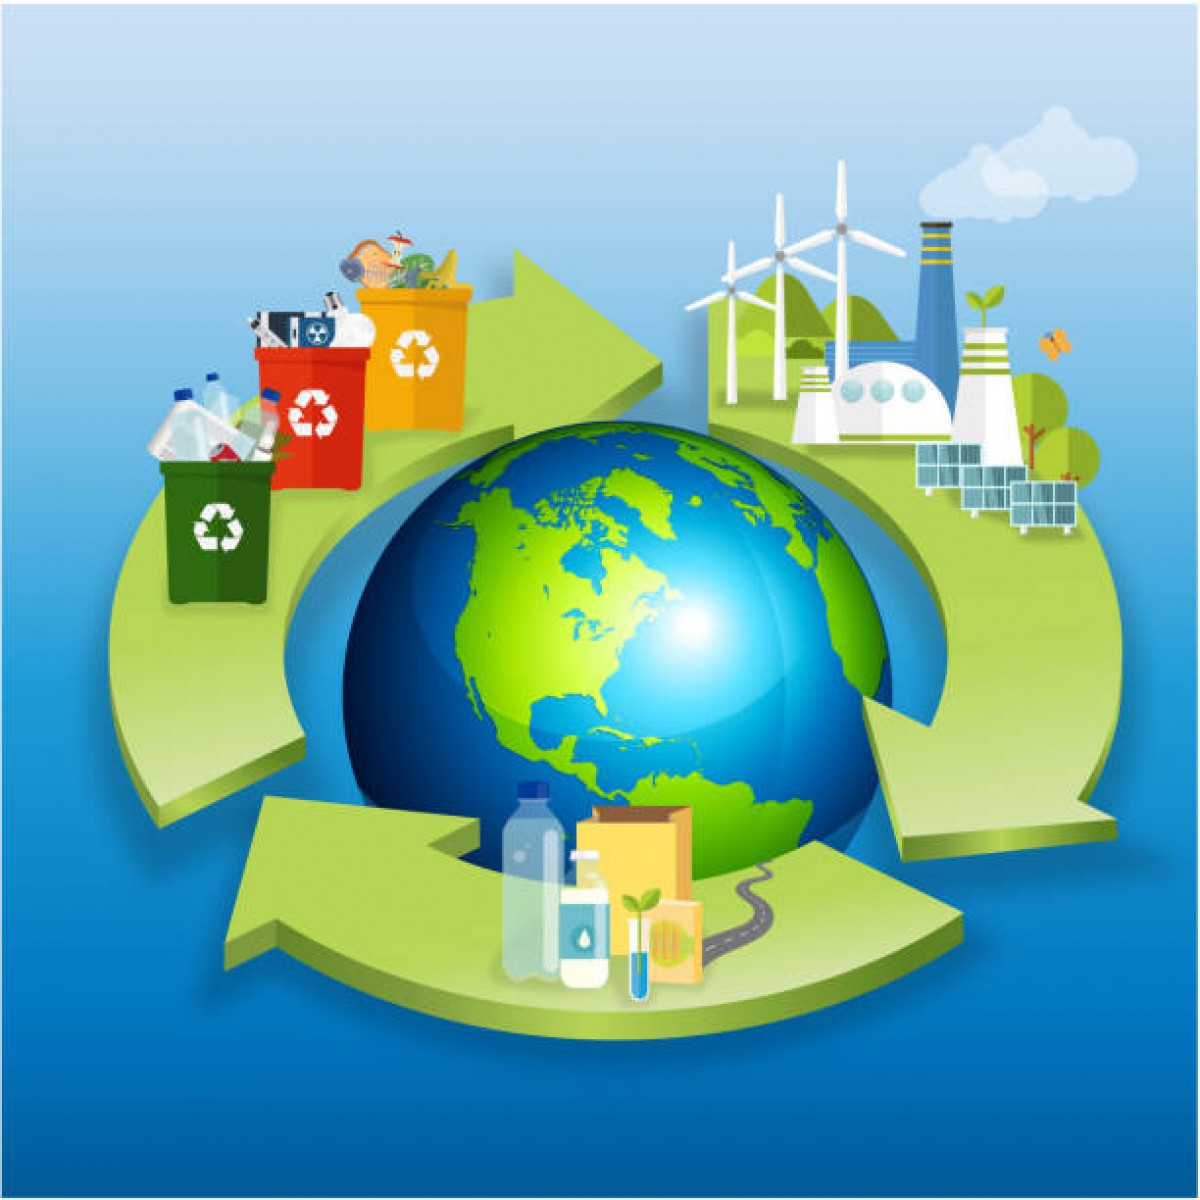 Curs en línia: Economia circular i sostenibilitat en l'empresa